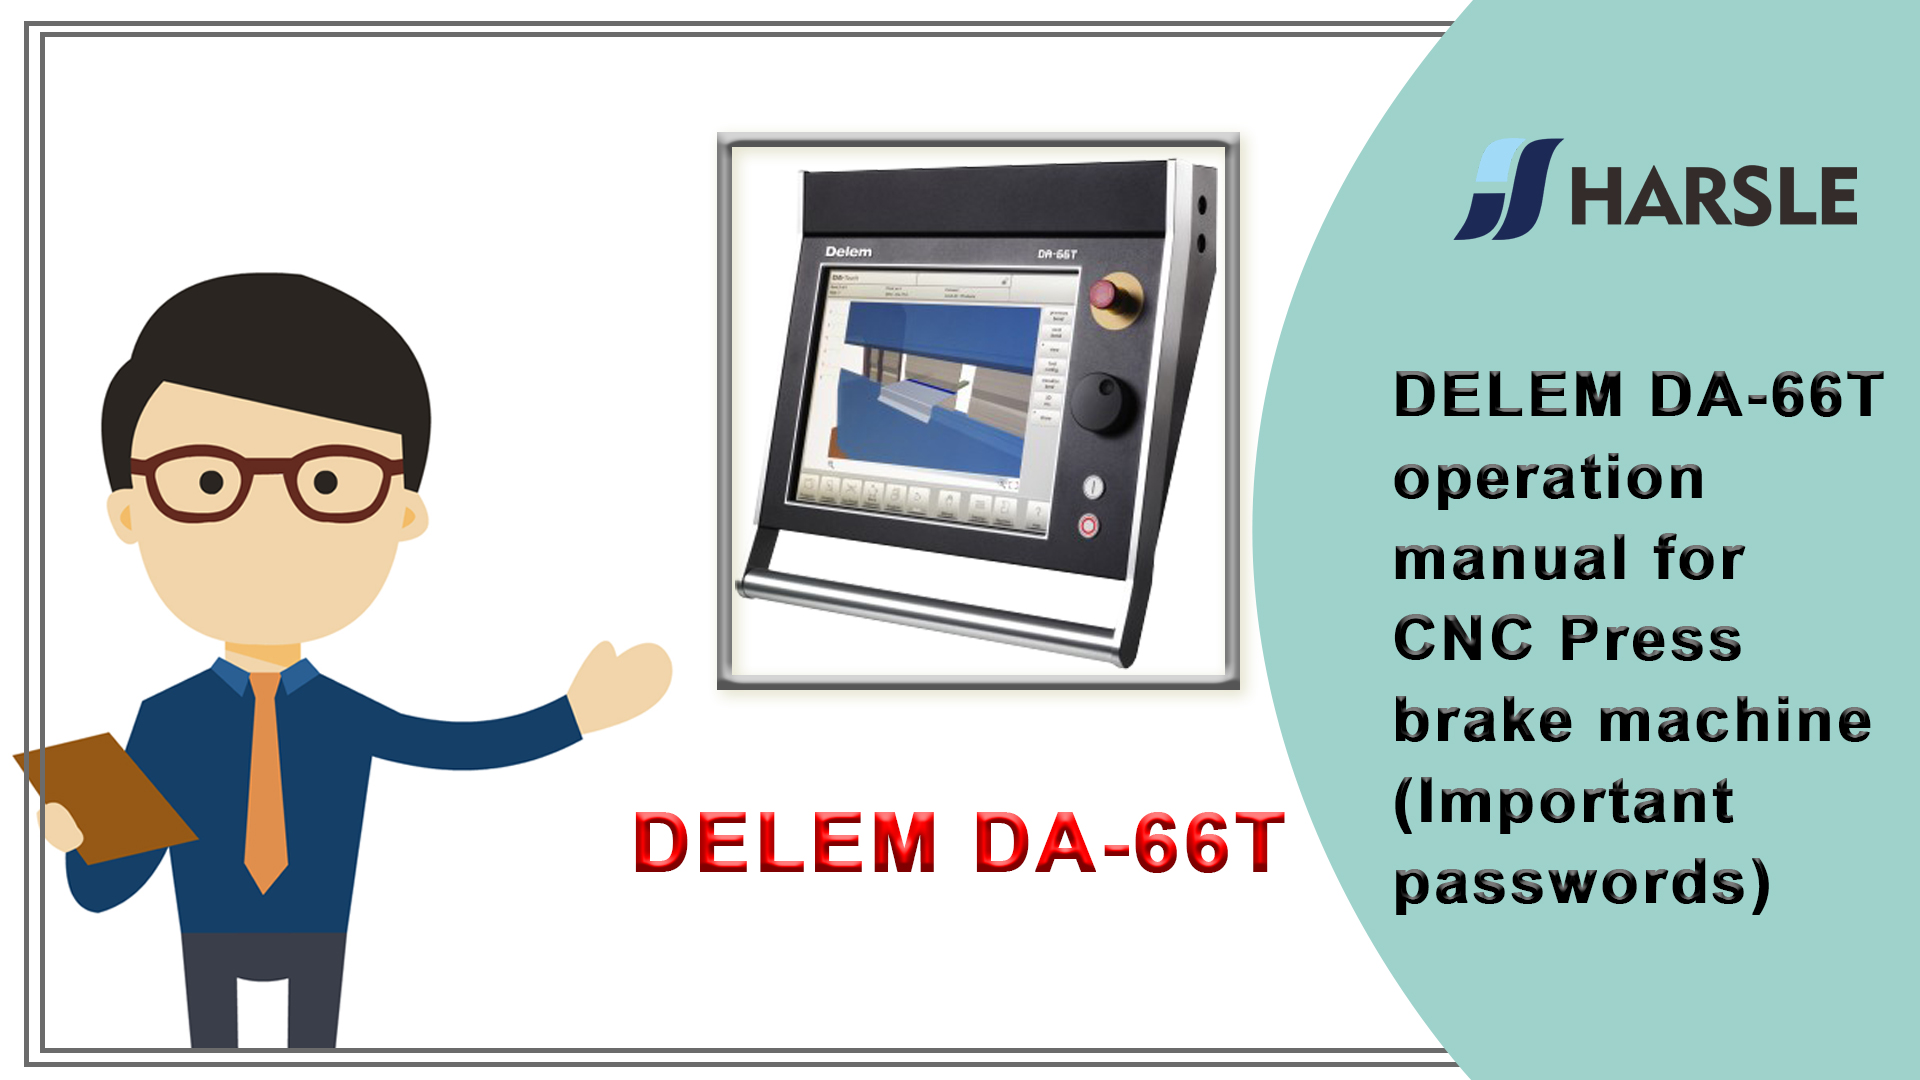 Návod k obsluze DELEM DA-66T pro CNC ohraňovací lis (důležitá hesla)